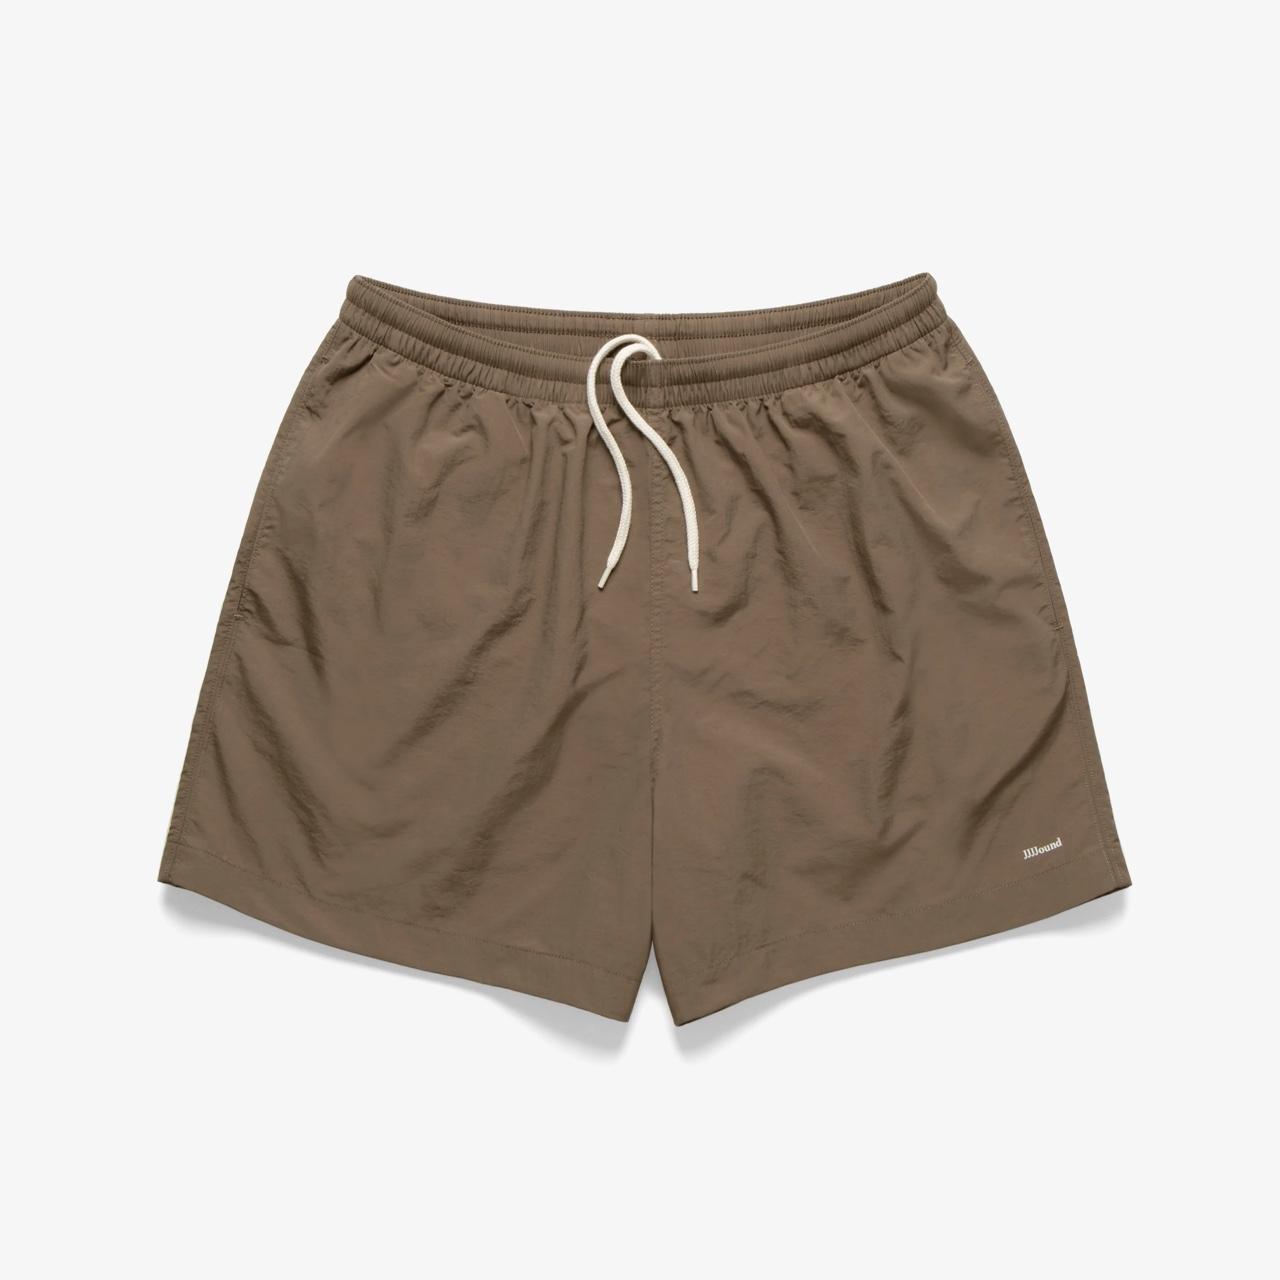 Jjjjound Camper shorts (7 inch), Brown, Size...